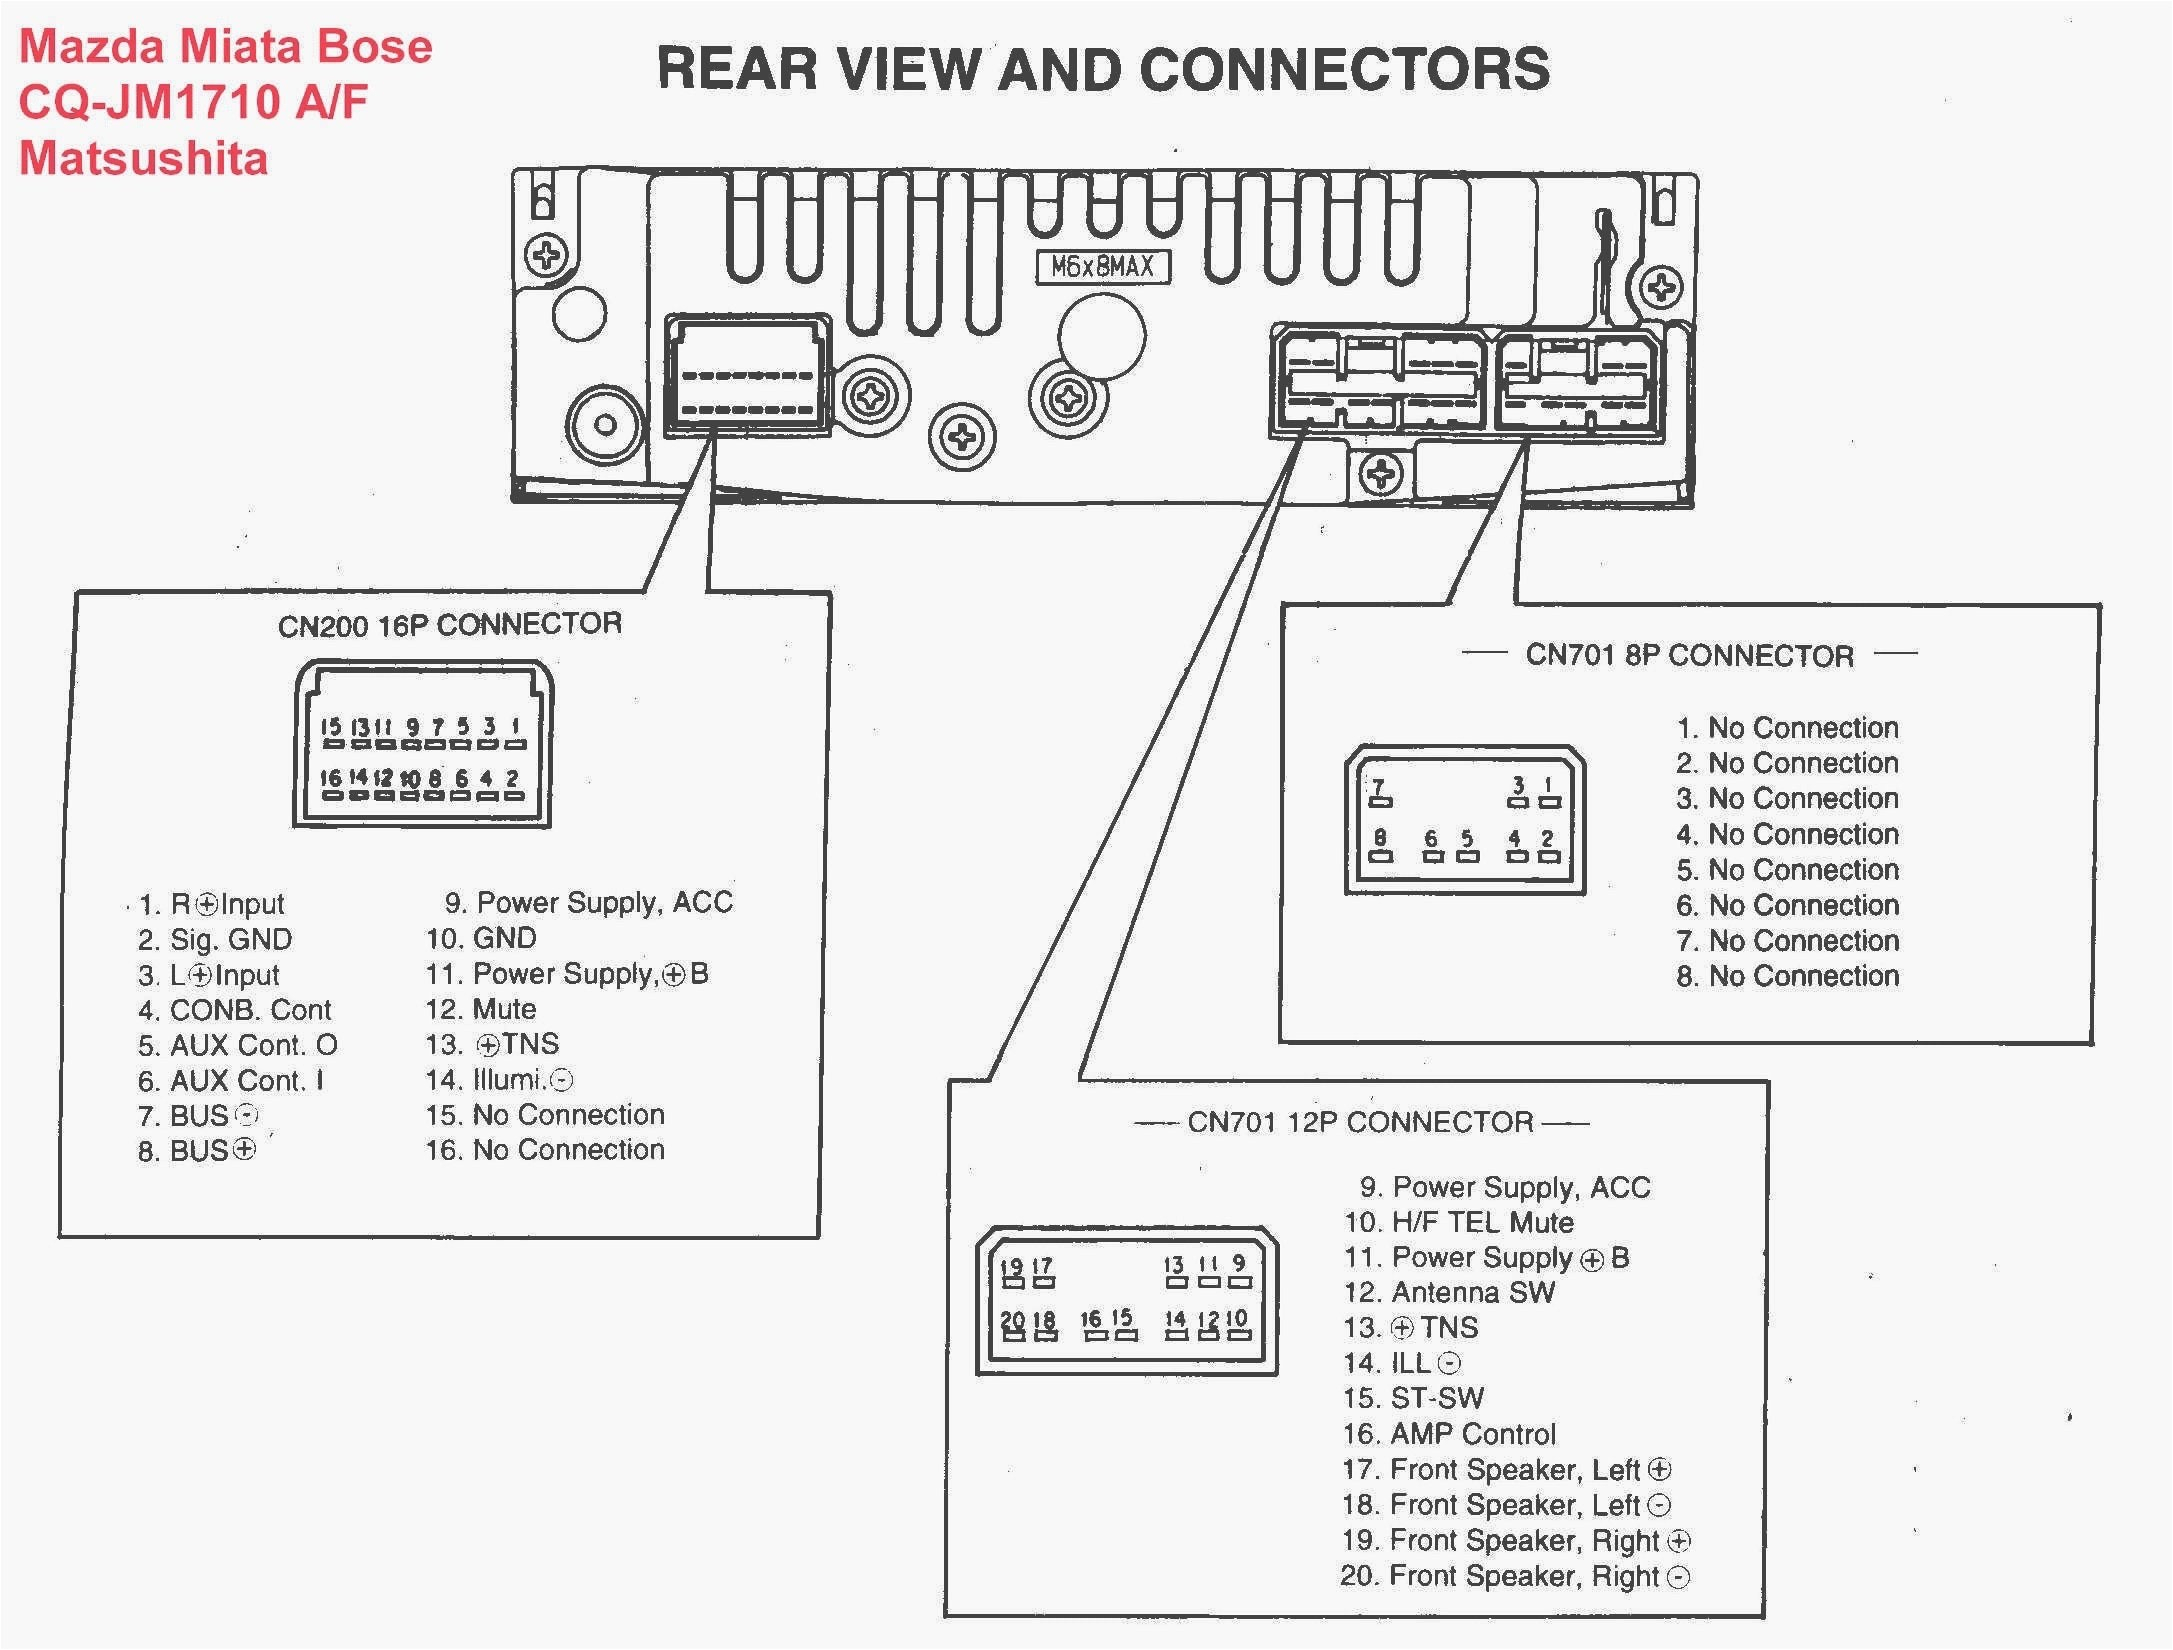 Pioneer Avic D3 Wiring Diagram Pioneer Radio Avic D3 Wiring Diagram Schema Diagram Database